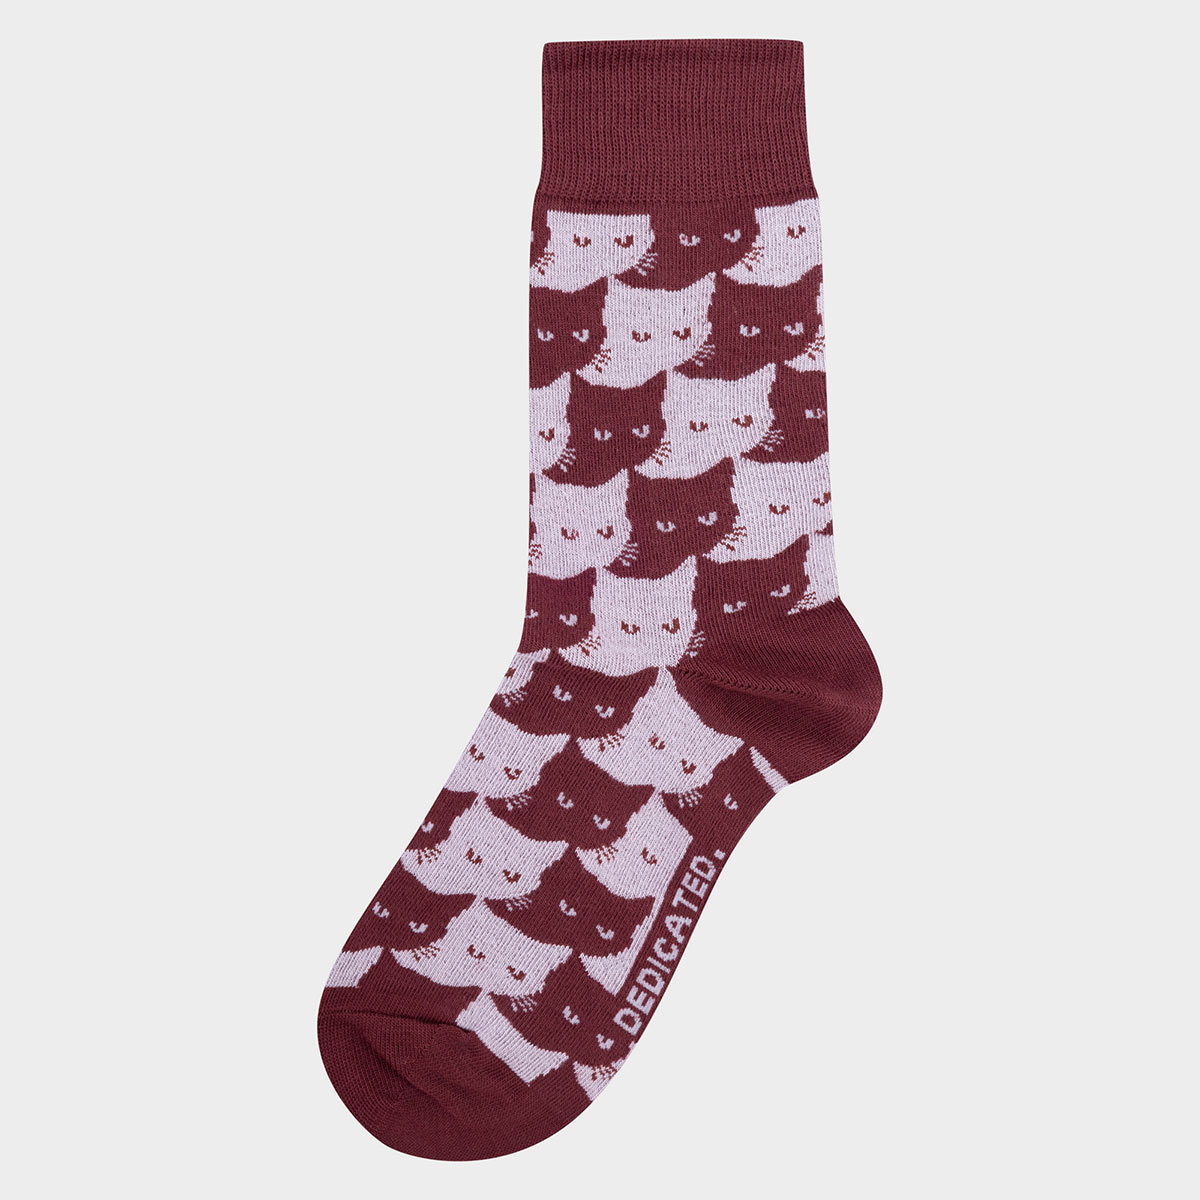 Socken mit Katzen Motiv aus Bio-Baumwolle in Weinrot.